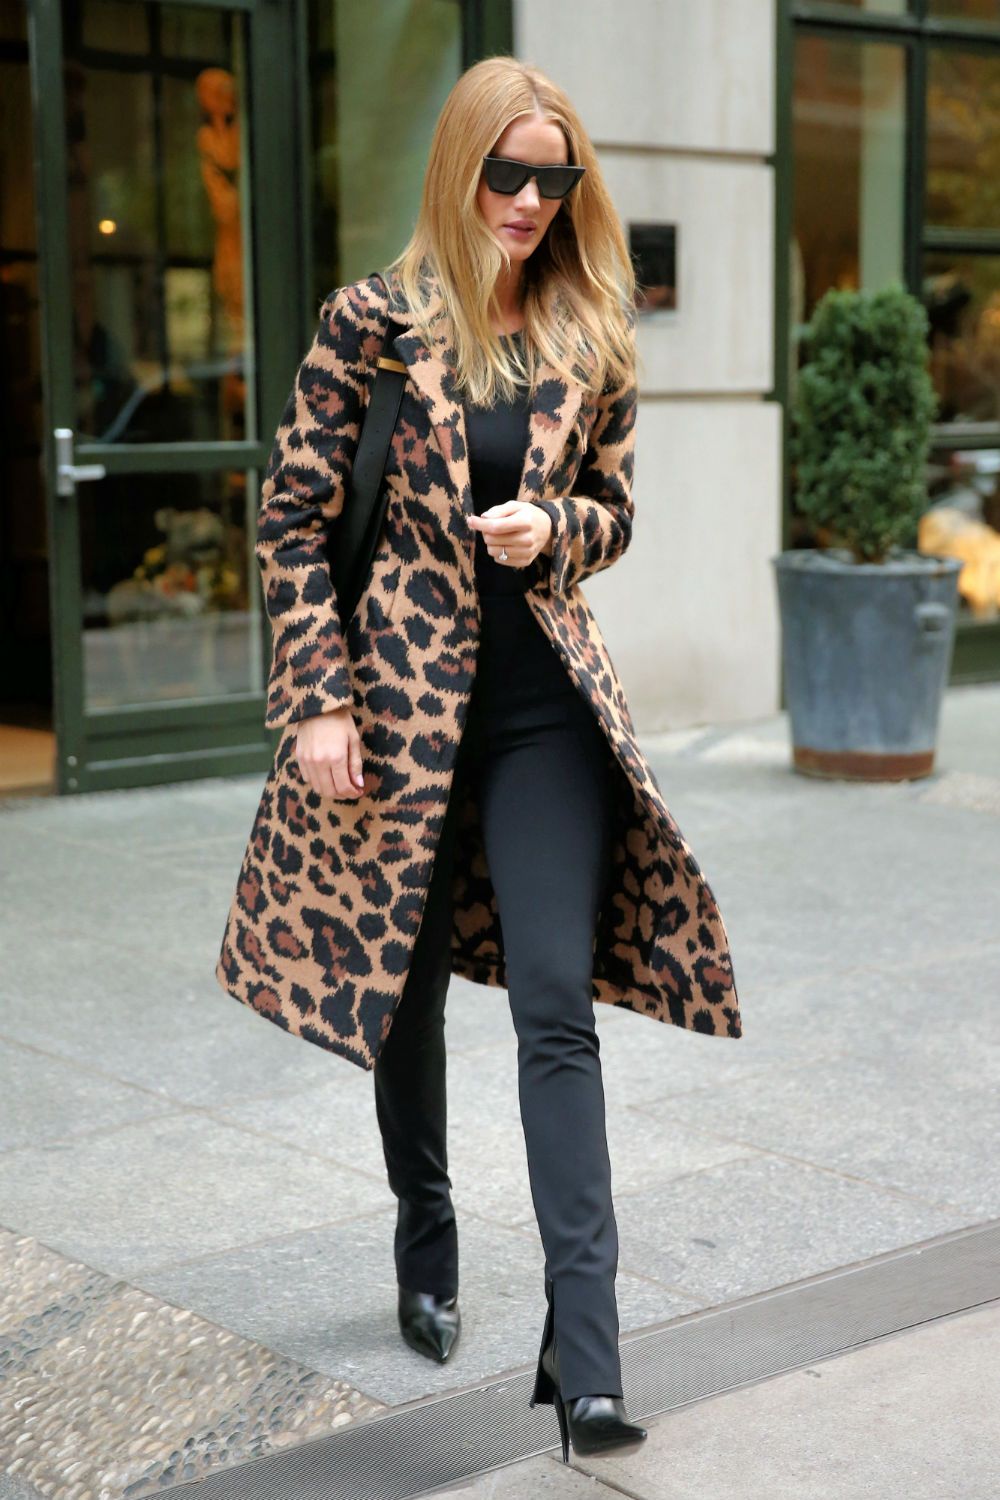 Rosie Huntington llevado un abrigo de estampado de leopardo que puedes encontrar en Zara - Woman